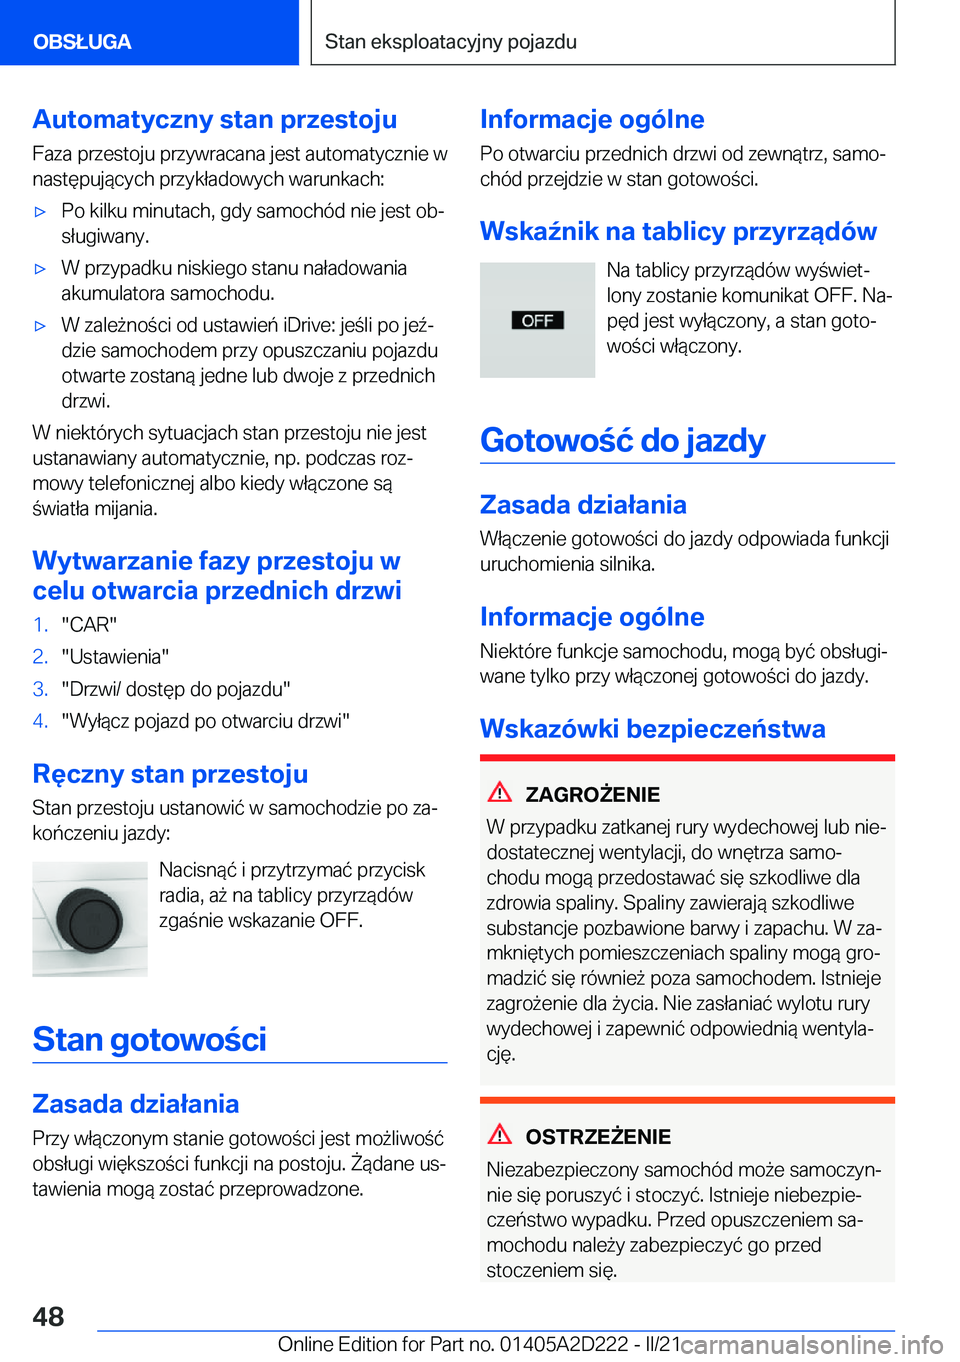 BMW X6 M 2021  Instrukcja obsługi (in Polish) �A�u�t�o�m�a�t�y�c�z�n�y��s�t�a�n��p�r�z�e�s�t�o�j�u�F�a�z�a��p�r�z�e�s�t�o�j�u��p�r�z�y�w�r�a�c�a�n�a��j�e�s�t��a�u�t�o�m�a�t�y�c�z�n�i�e��w
�n�a�s�t�